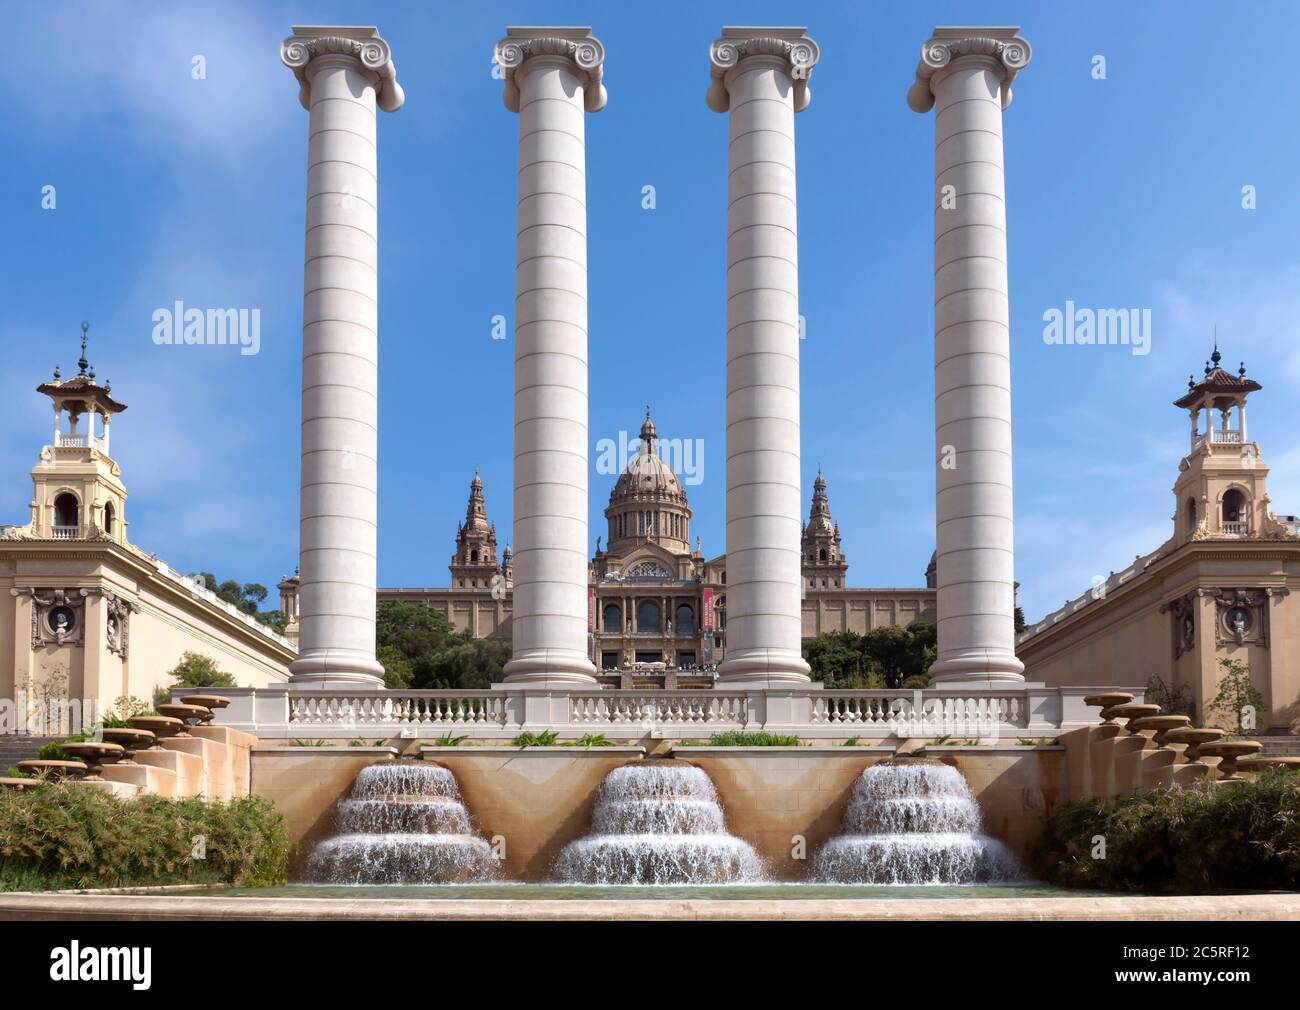 BARCELONA, SPANIEN - 8. JULI 2015: Die vier Säulen, von Josep Puig i Cadafalch erstellt, ist auf dem Platz vor dem Museu Nacional d'Art de Catalunya, B Stockfoto